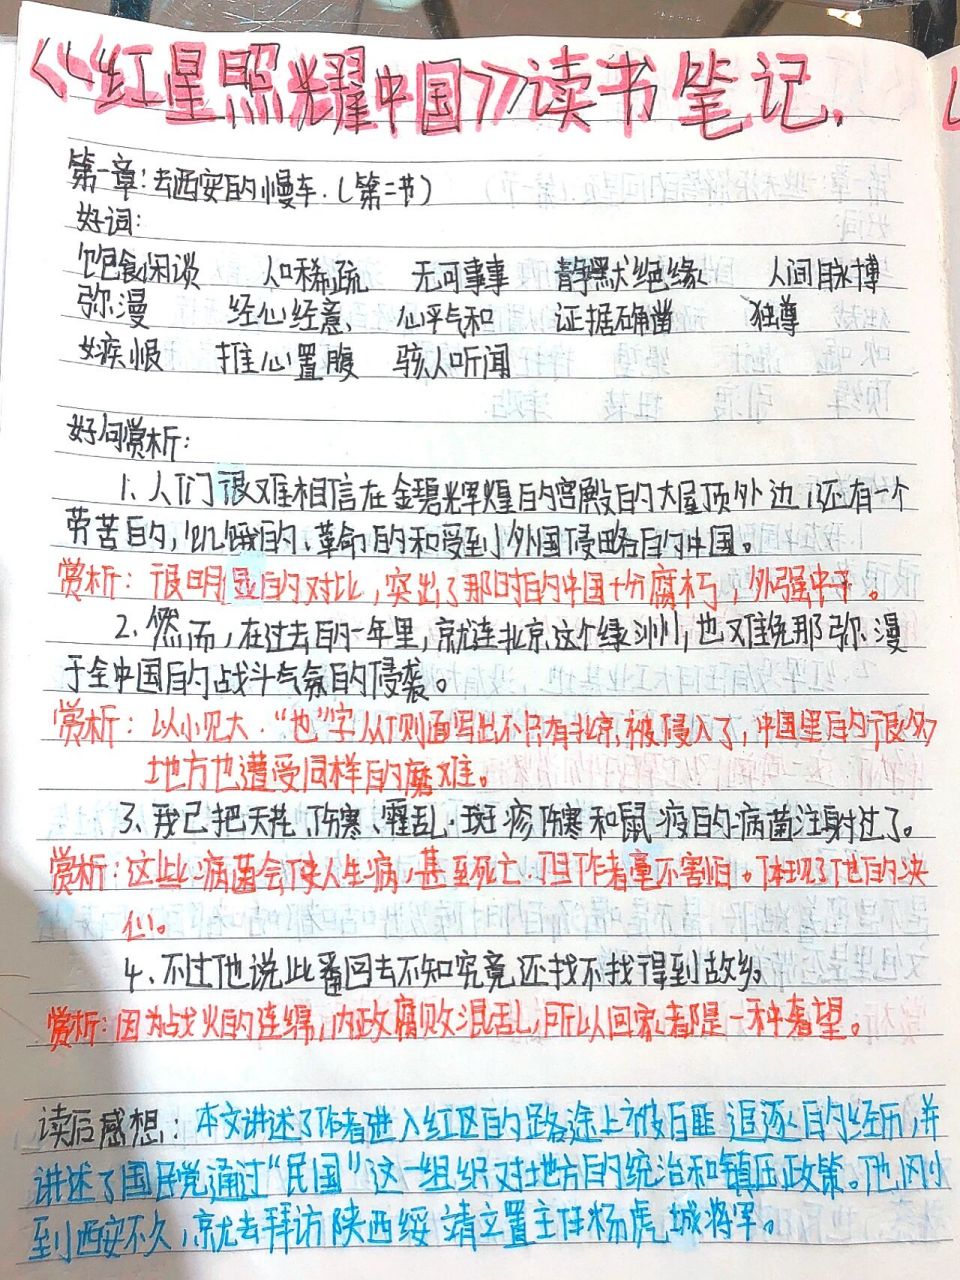 《红星照耀中国》读书笔记第一章第二节